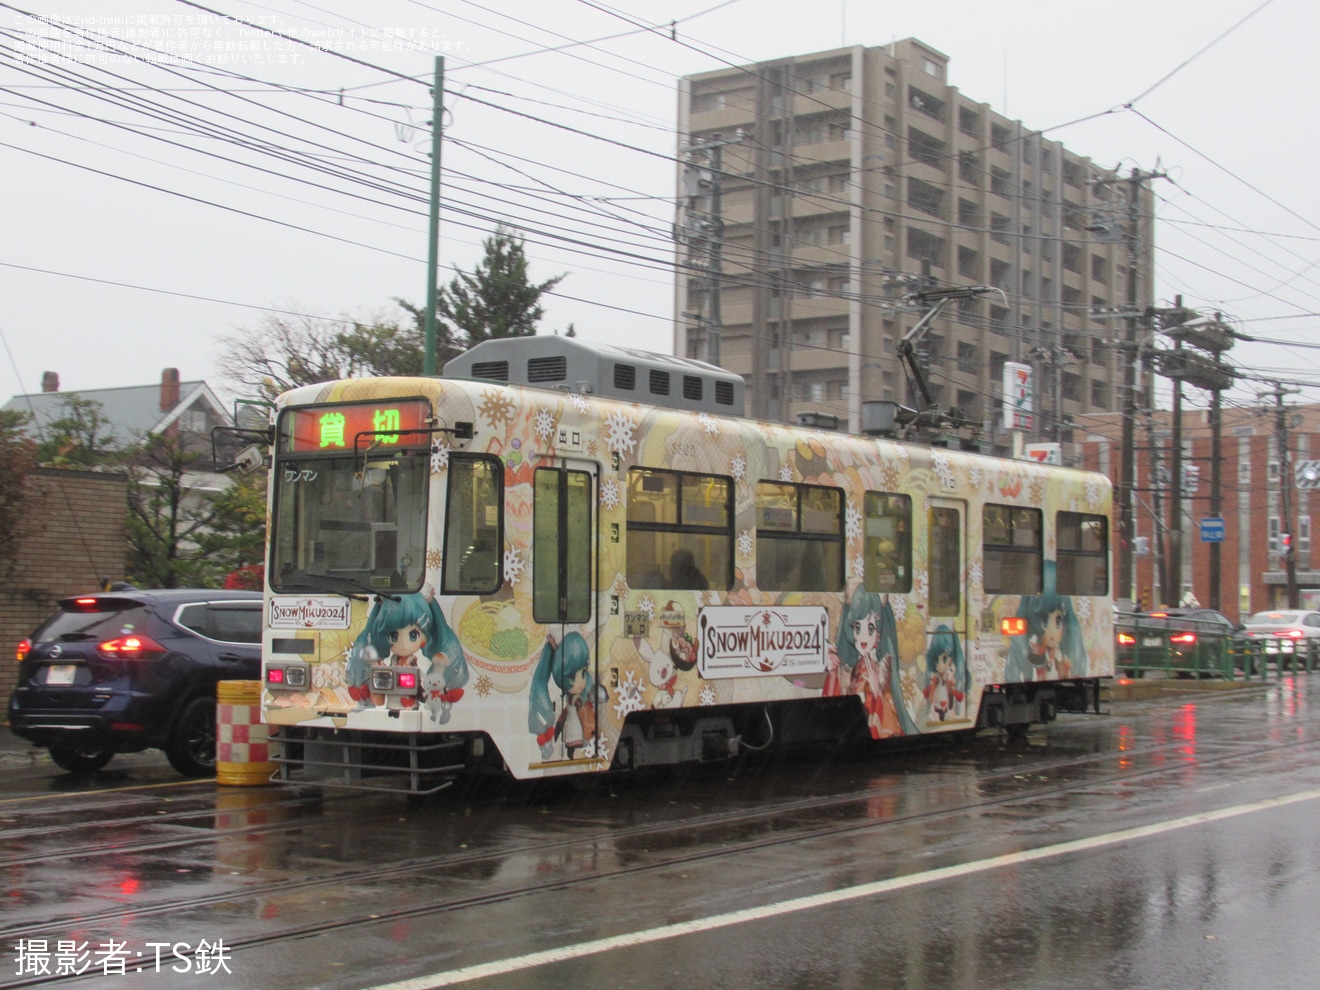 【札幌市交】雪ミク電車2024が試運転の拡大写真